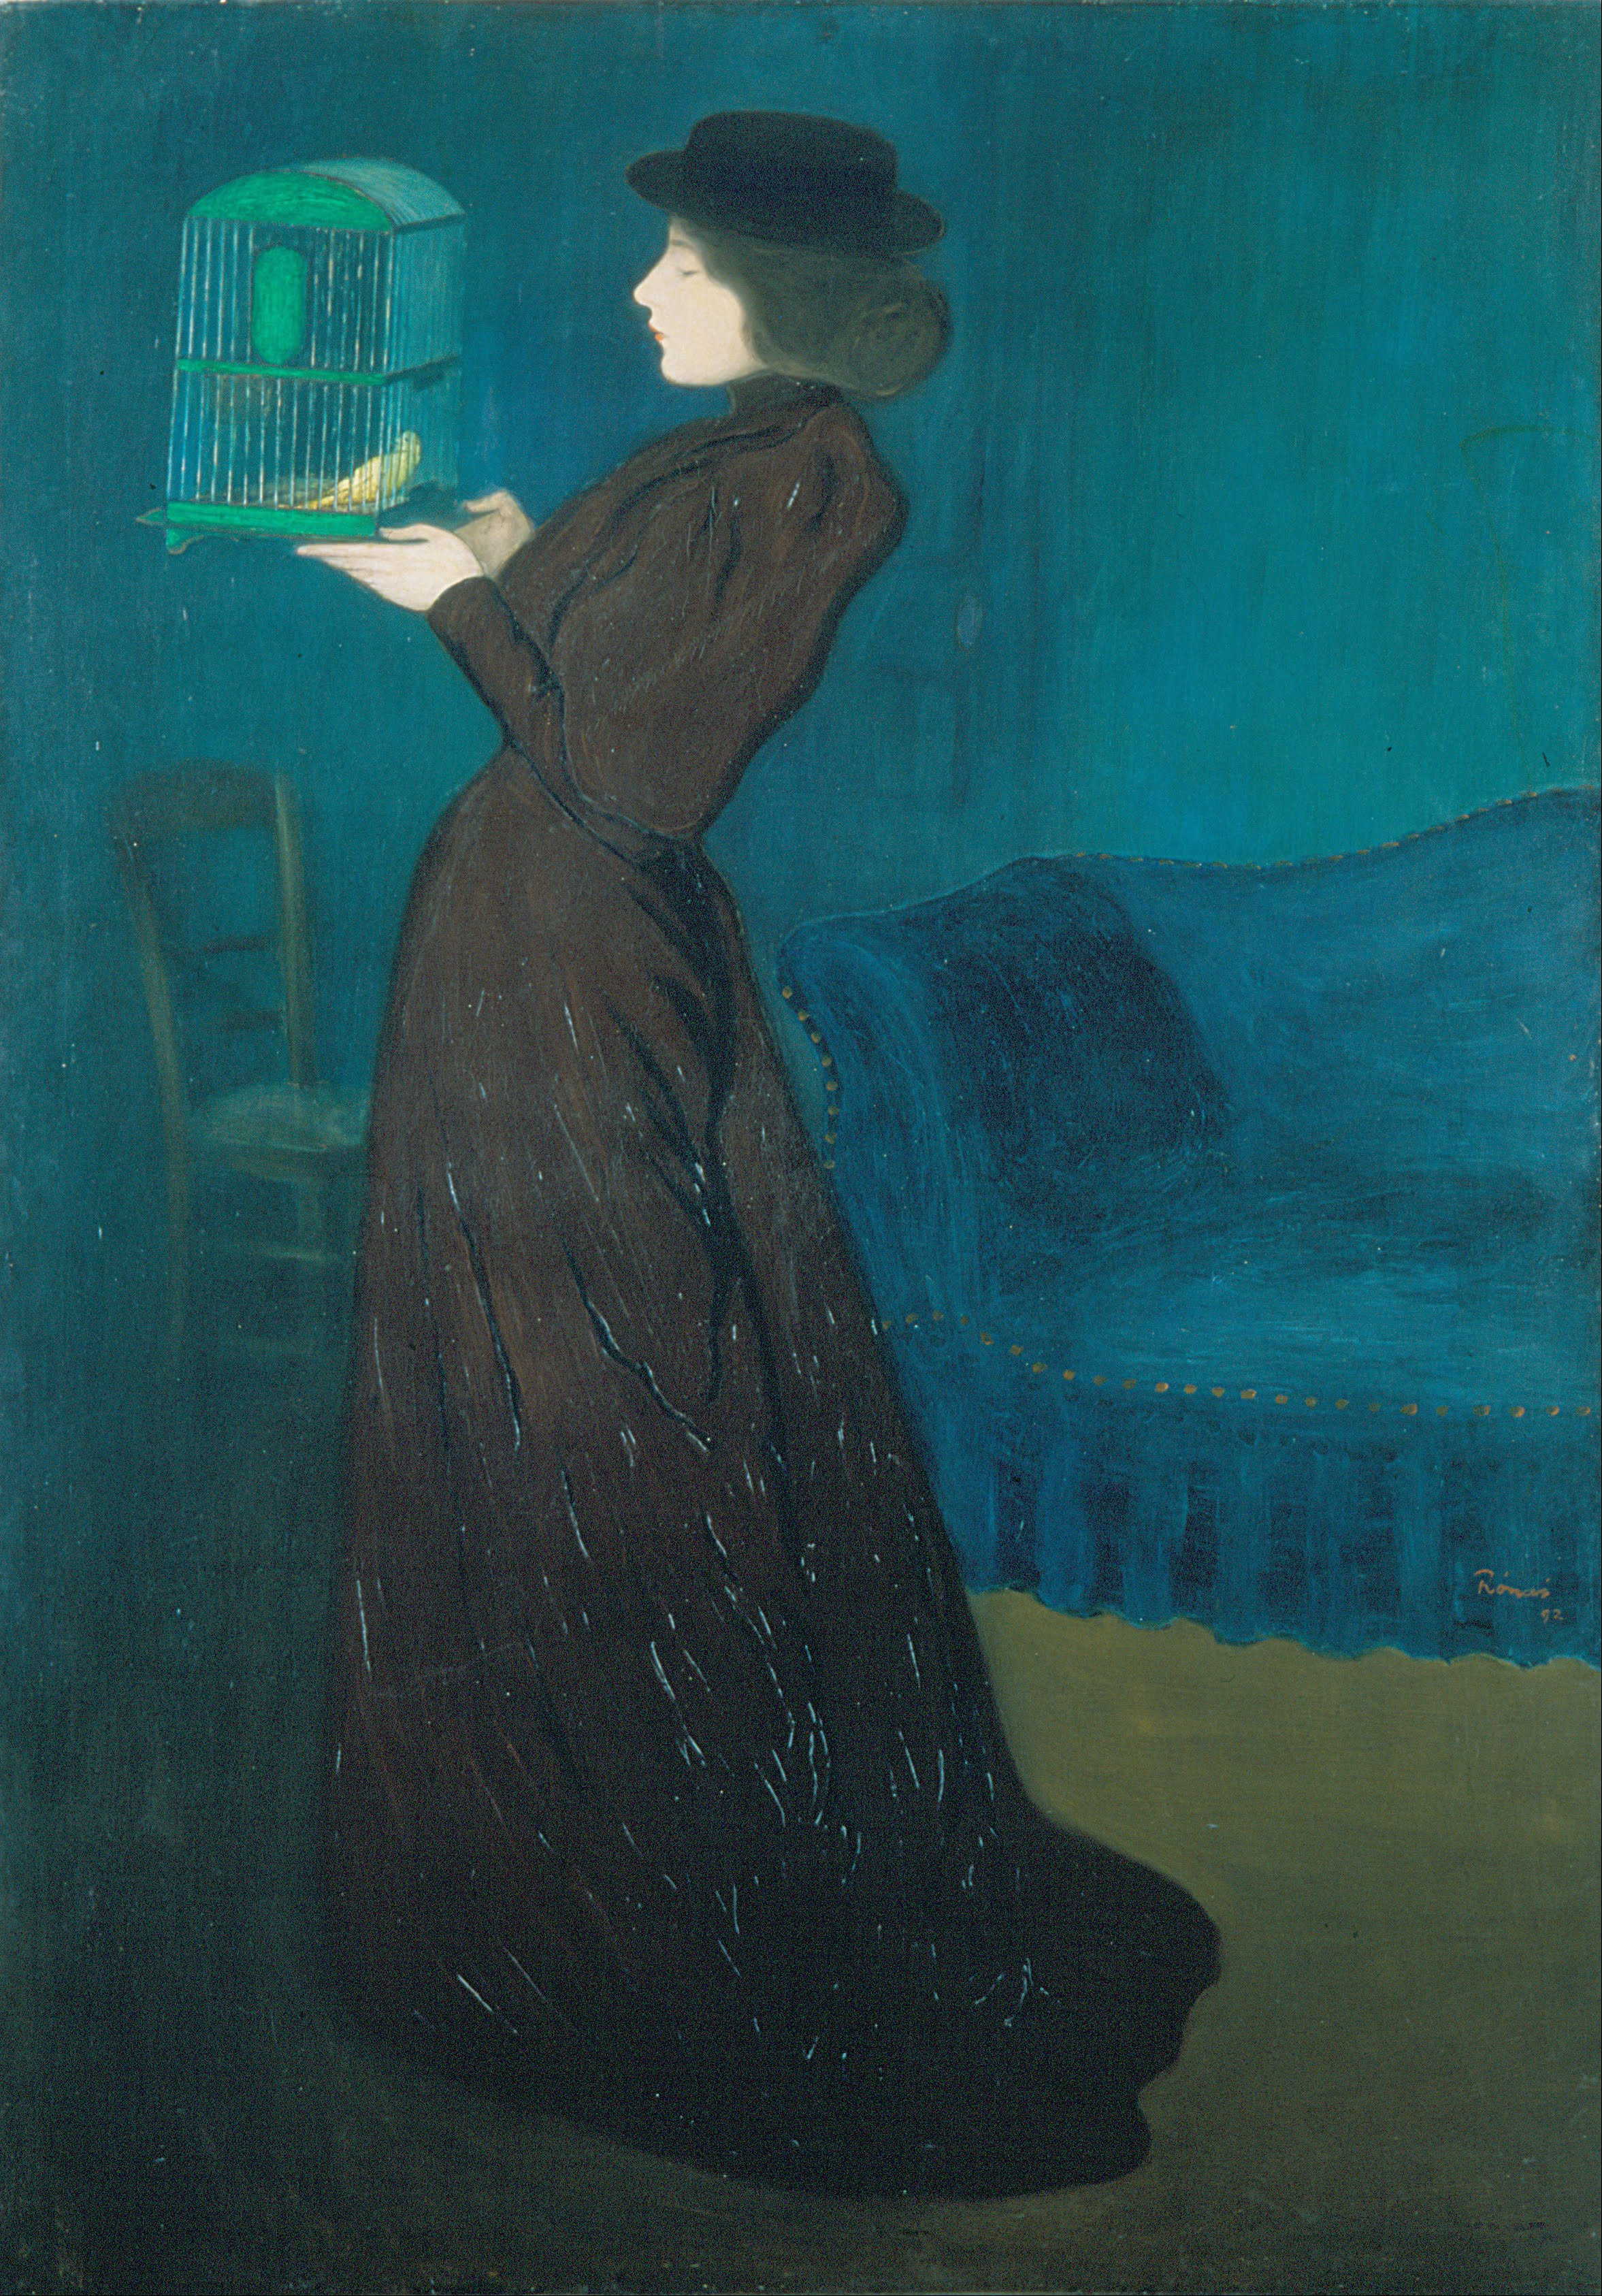 举着鸟笼的女人 by 约瑟夫 · 里普罗尼 - 1892 - 185.5 x 130 cm 匈牙利国家美术馆